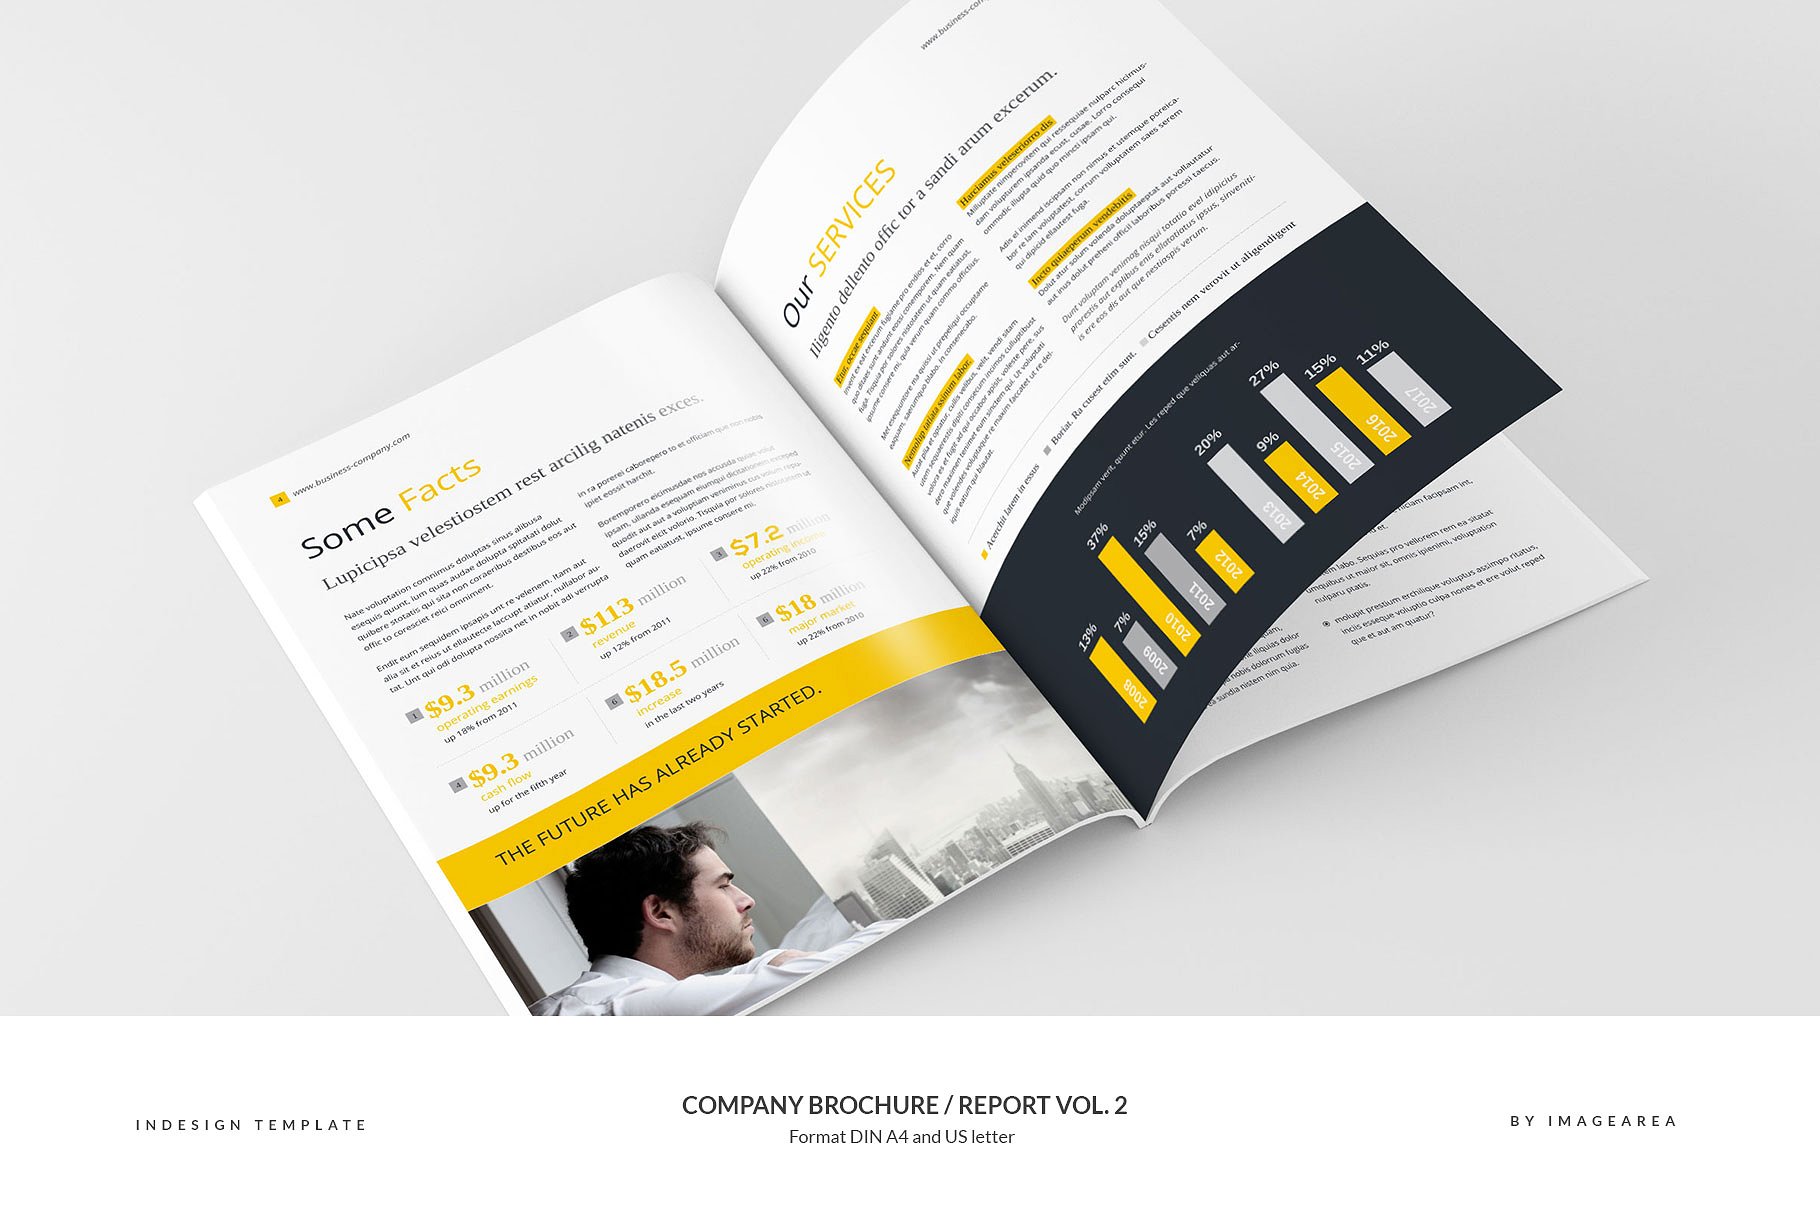 企业品牌宣传画册/企业年报设计模板v2 Company Brochure / Report Vol. 2插图(3)